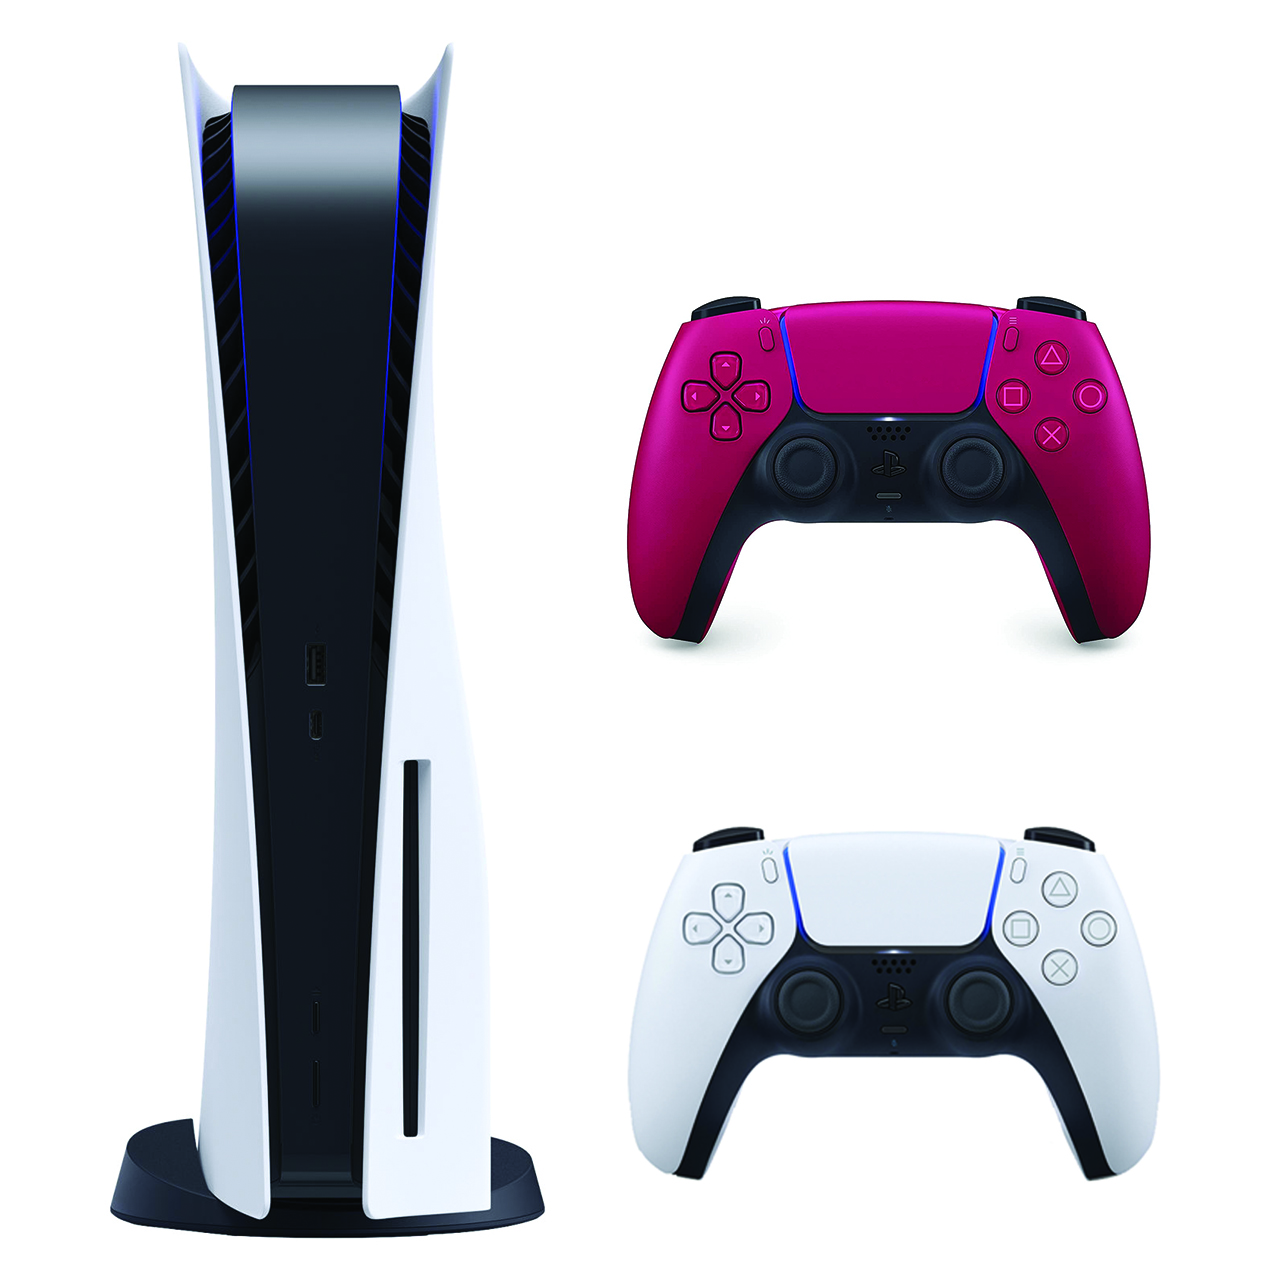  کنسول بازی سونی مدل PlayStation 5 ظرفیت 825 گیگابایت به همراه دسته اضافی